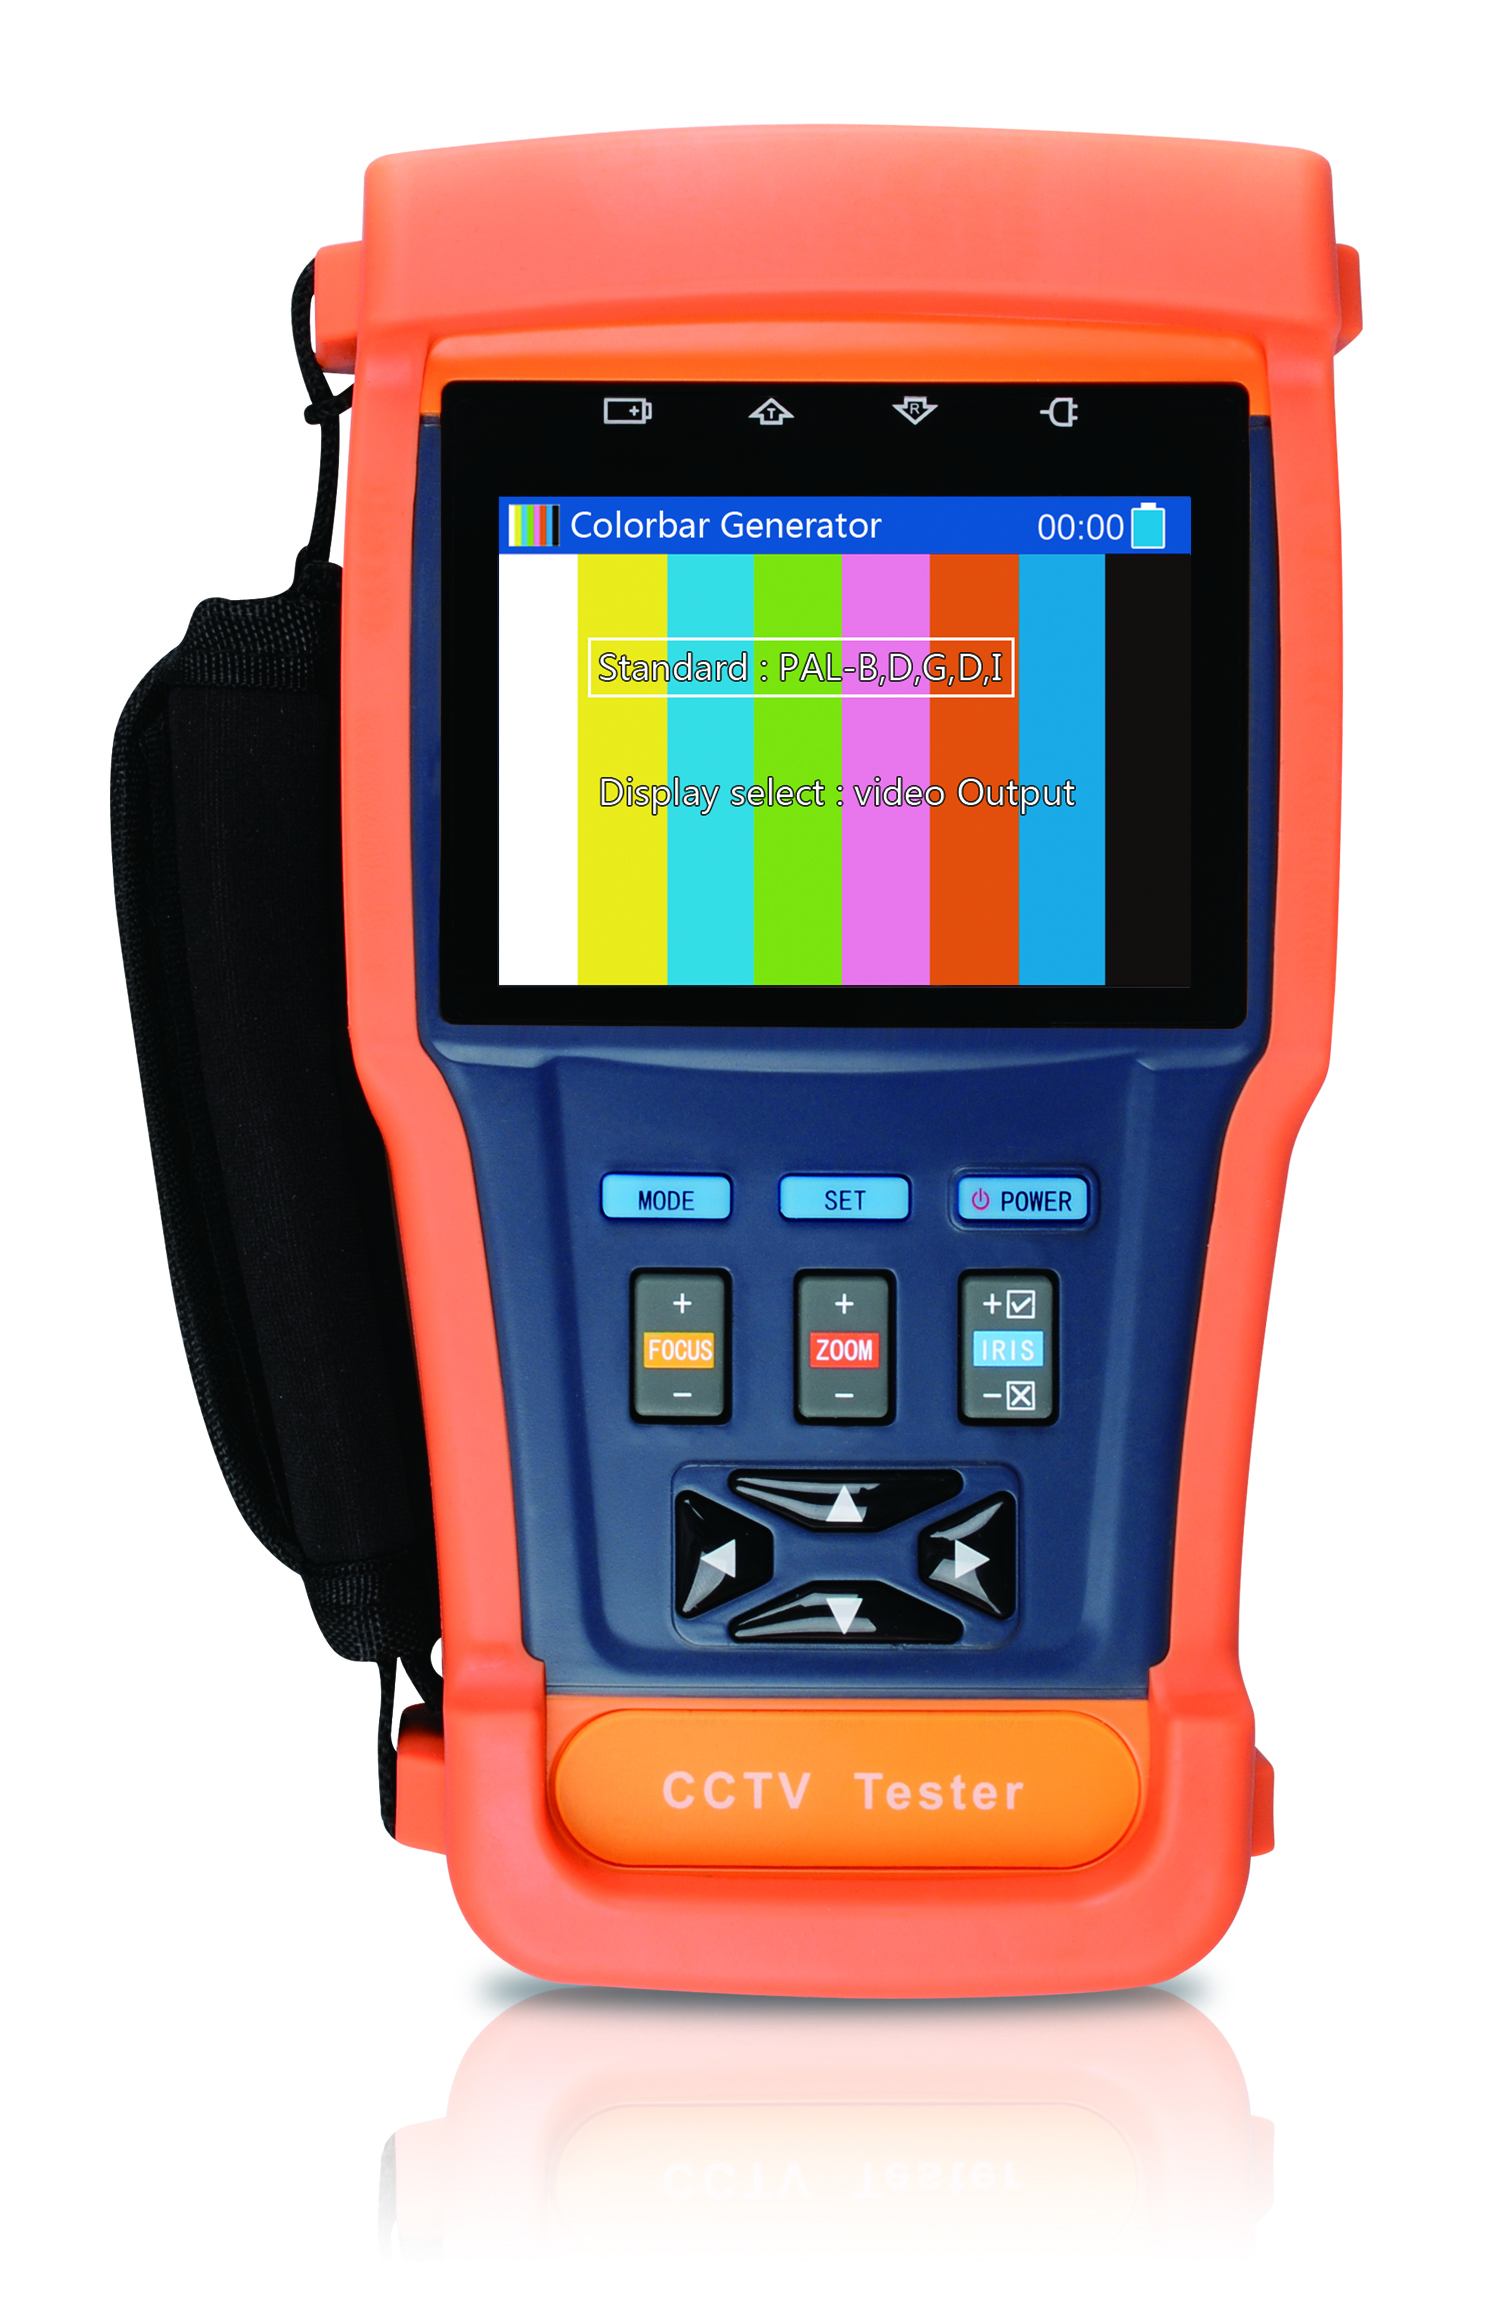 CCTV Tester DT-N91